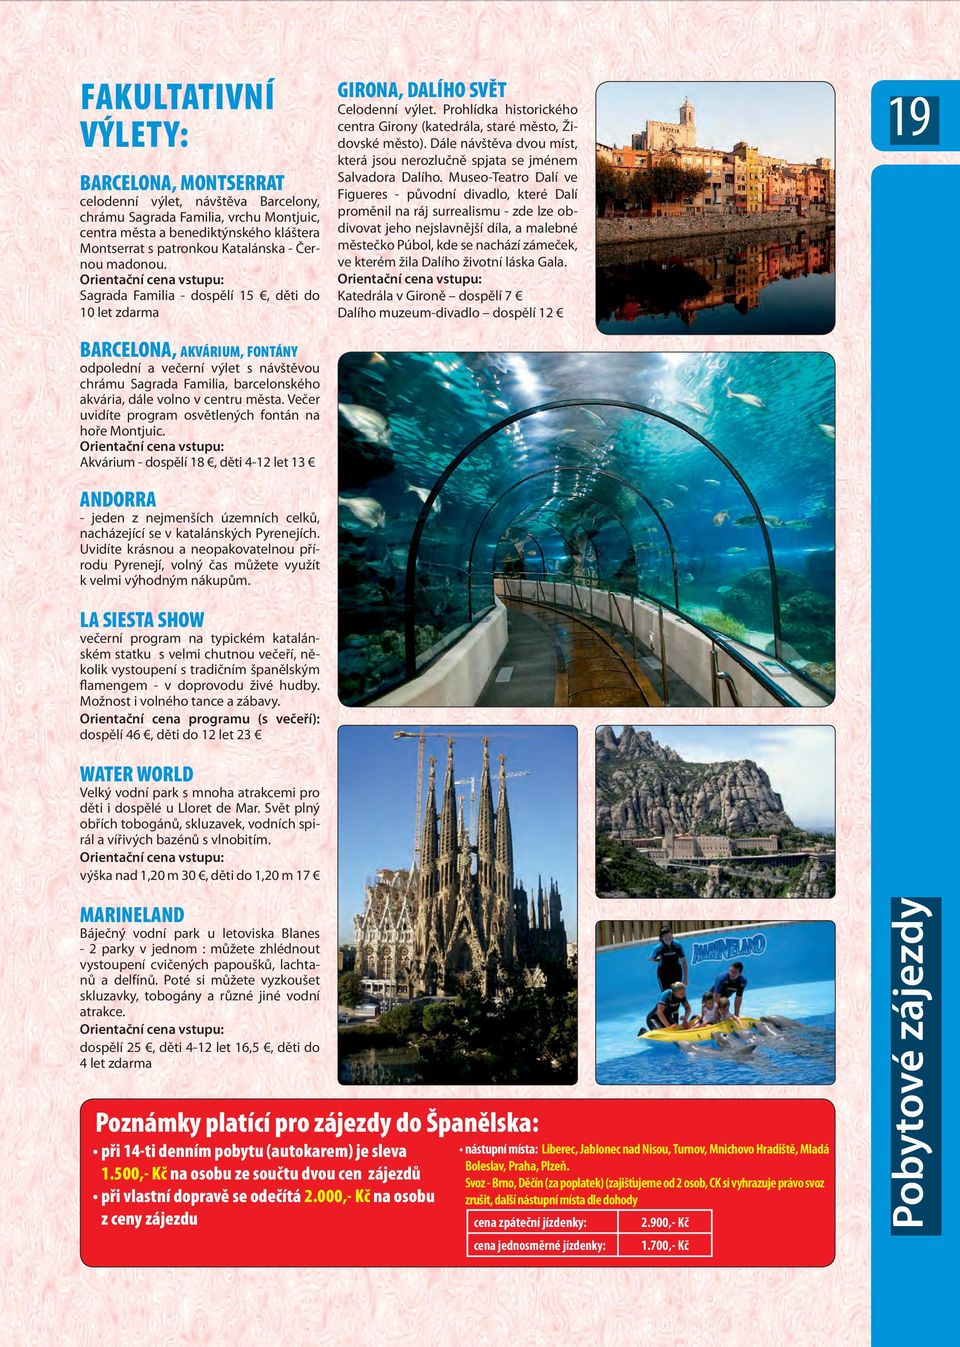 Orientační cena vstupu: Sagrada Familia - dospělí 15, děti do 10 let zdarma BARCELONA, AKVÁRIUM, FONTÁNY odpolední a večerní výlet s návštěvou chrámu Sagrada Familia, barcelonského akvária, dále